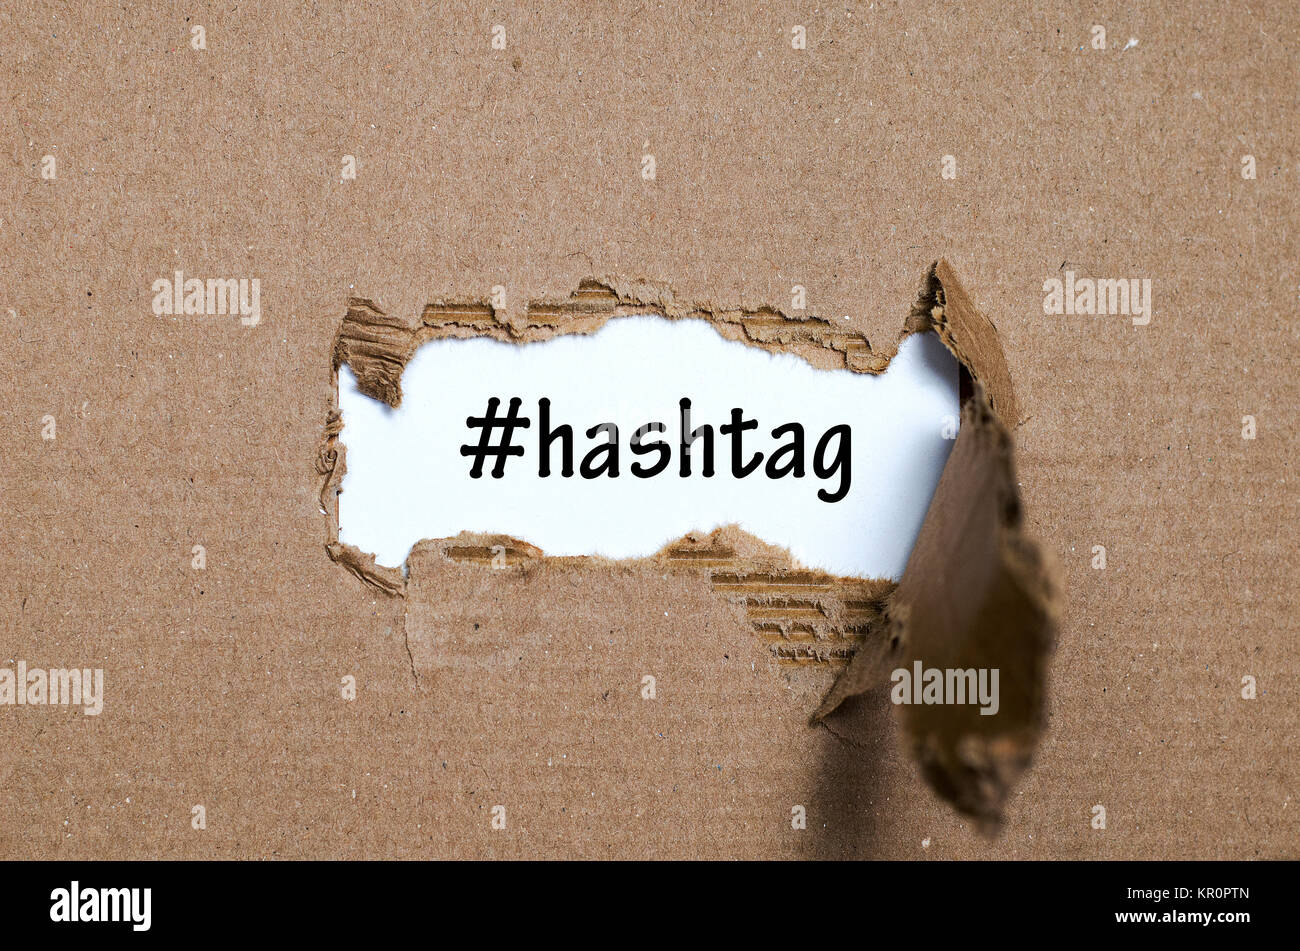 La parola hashtag che appaiono dietro di carta strappata Foto Stock